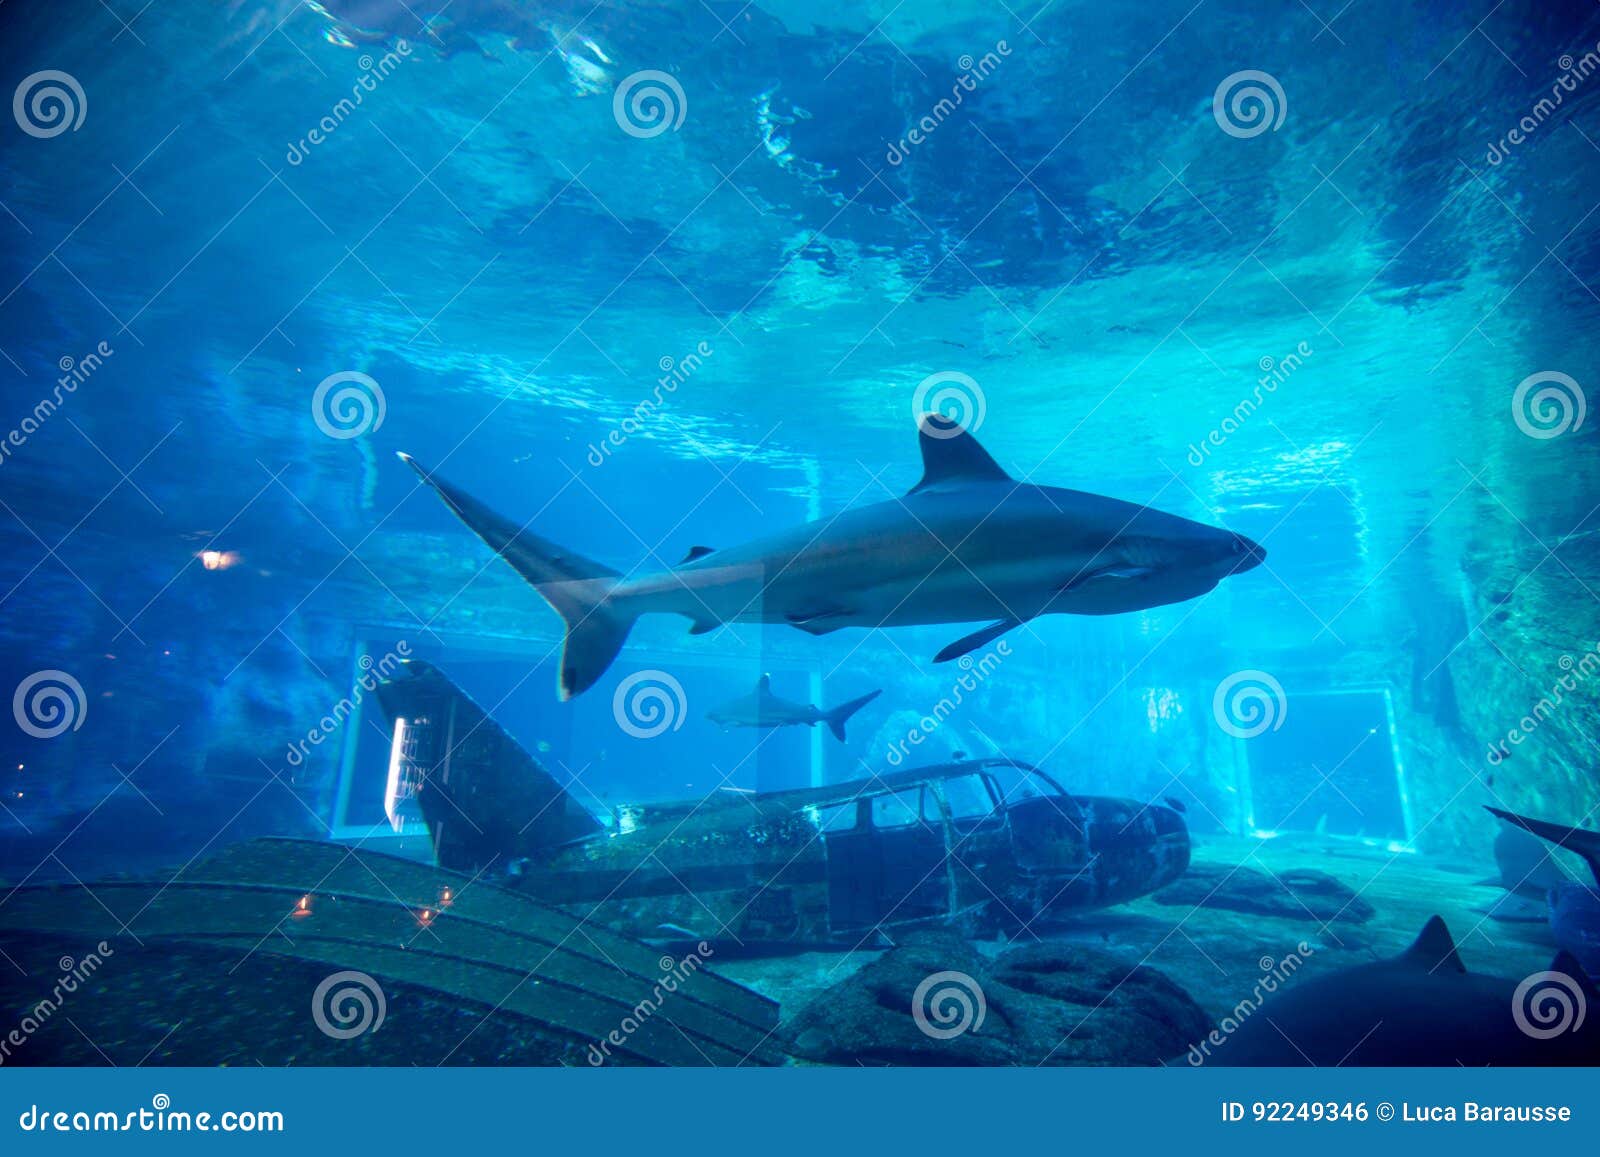 Καρχαρίας κλωστών στο ενυδρείο. Κλείστε επάνω την άποψη των καρχαριών κλωστών, που κολυμπούν μέσω ενός ενυδρείου κόσμος θάλασσας uShaka το πέμπτο - μεγαλύτερο ενυδρείο στον κόσμο